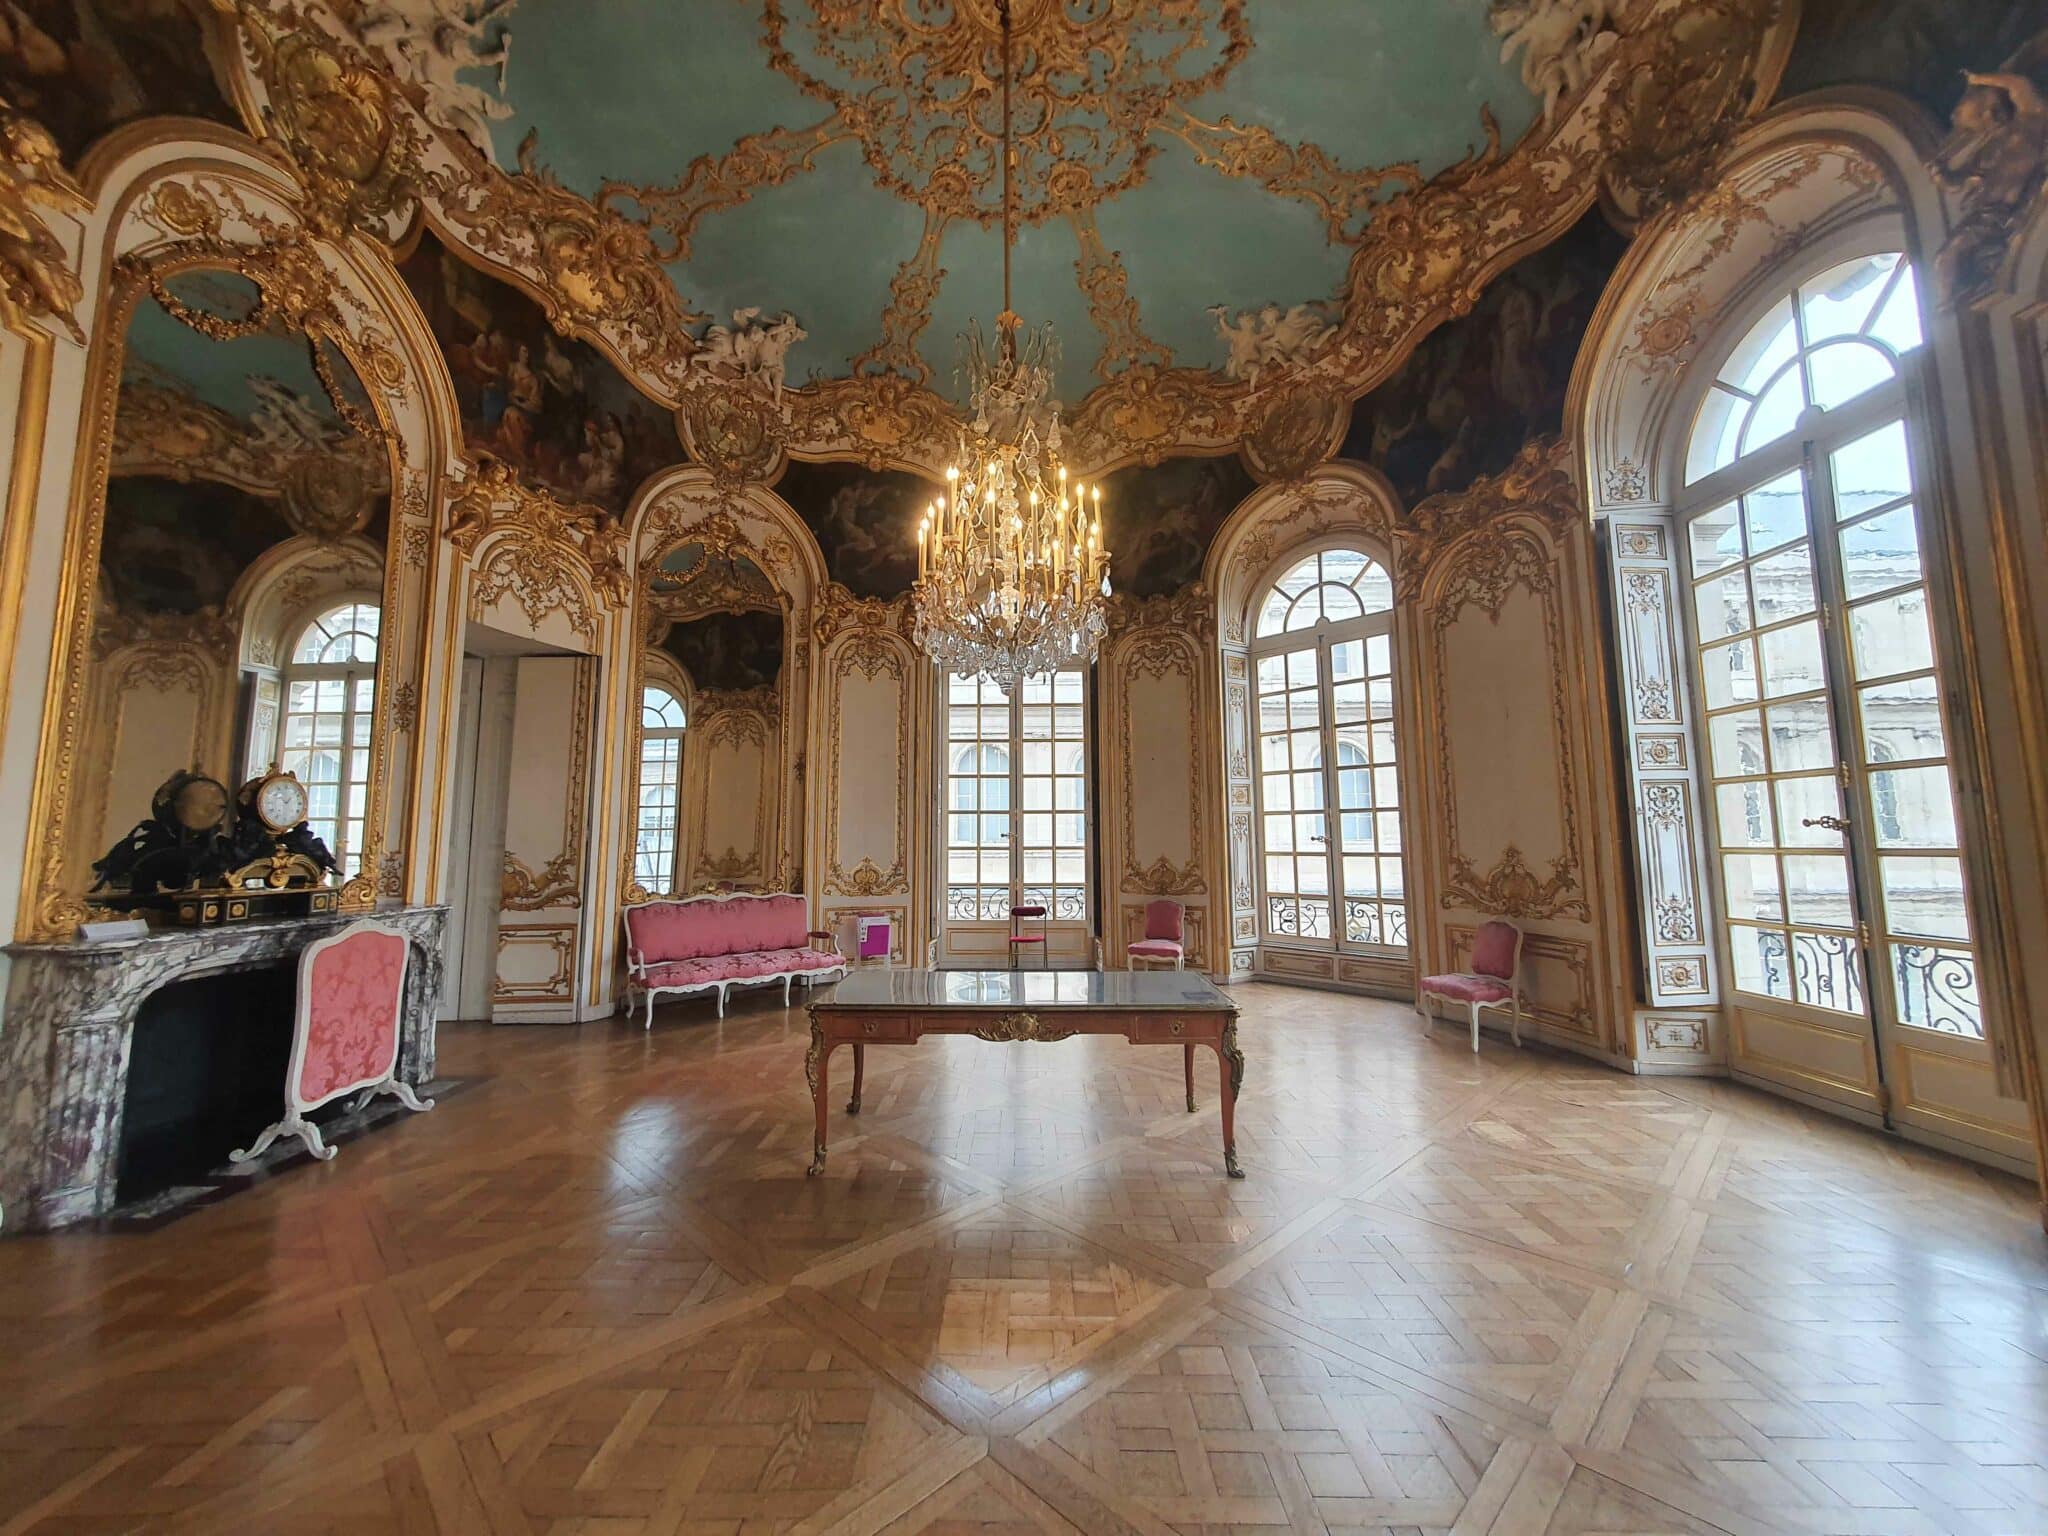 Sale de style Rococo, Musée des Archives nationales, Paris